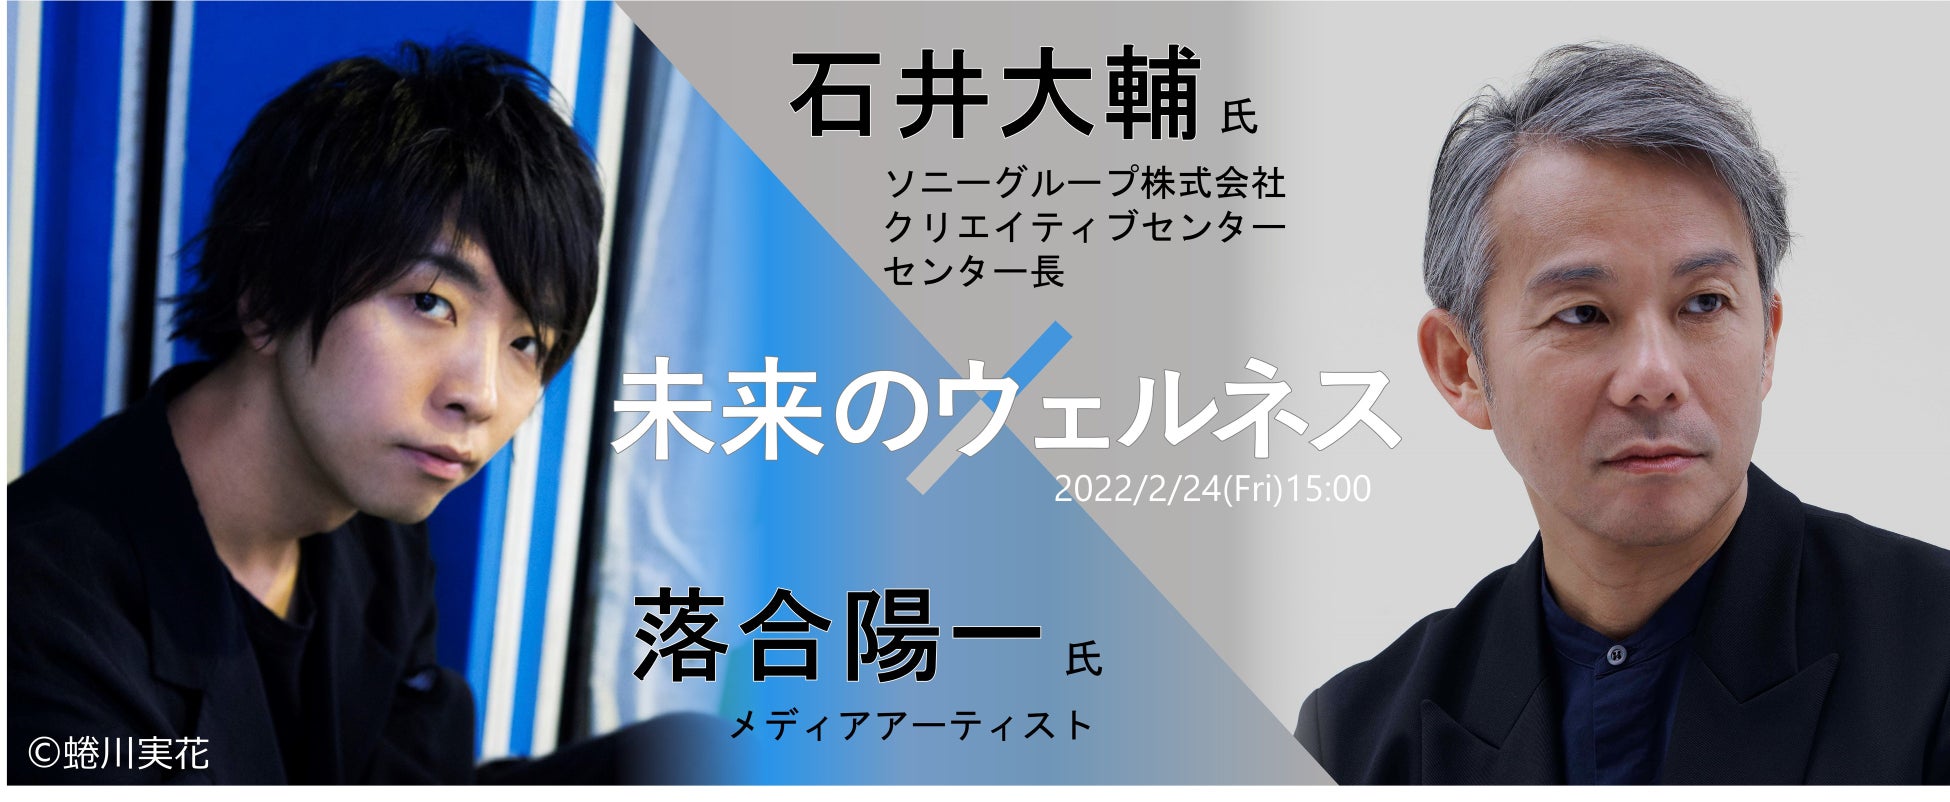 美容師の表現力を競うフォトイベント「DA-AD-2022」 高知県の美容師 氏川りのさんがグランプリ受賞！